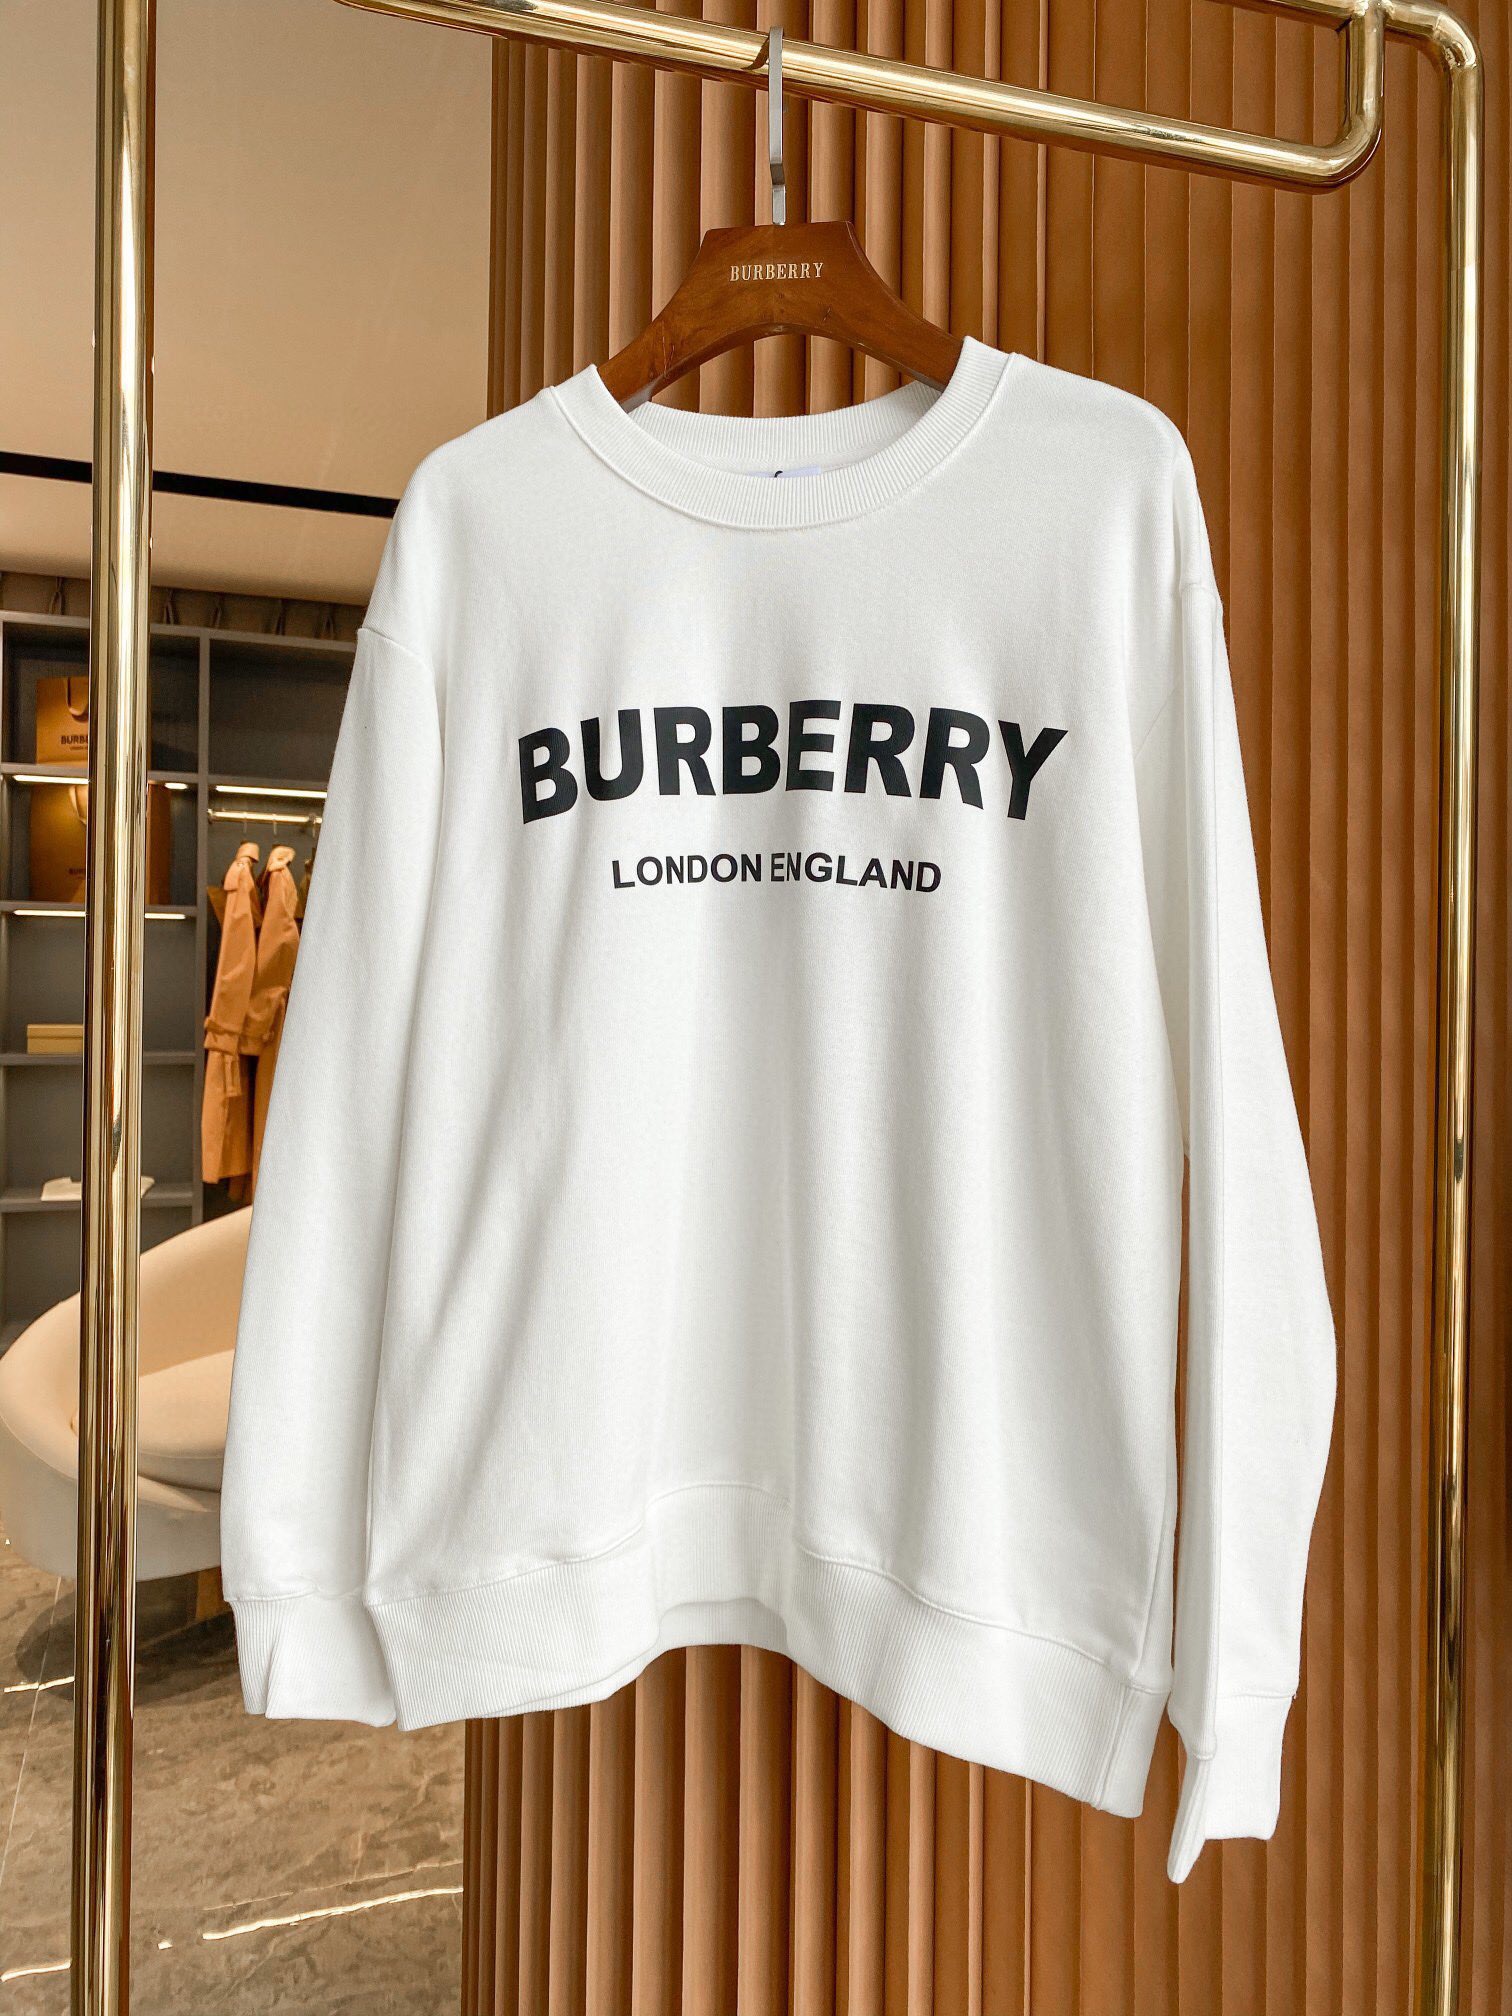 Burberry 專櫃經典系列大學T 爆款來襲 時尚百搭超好看